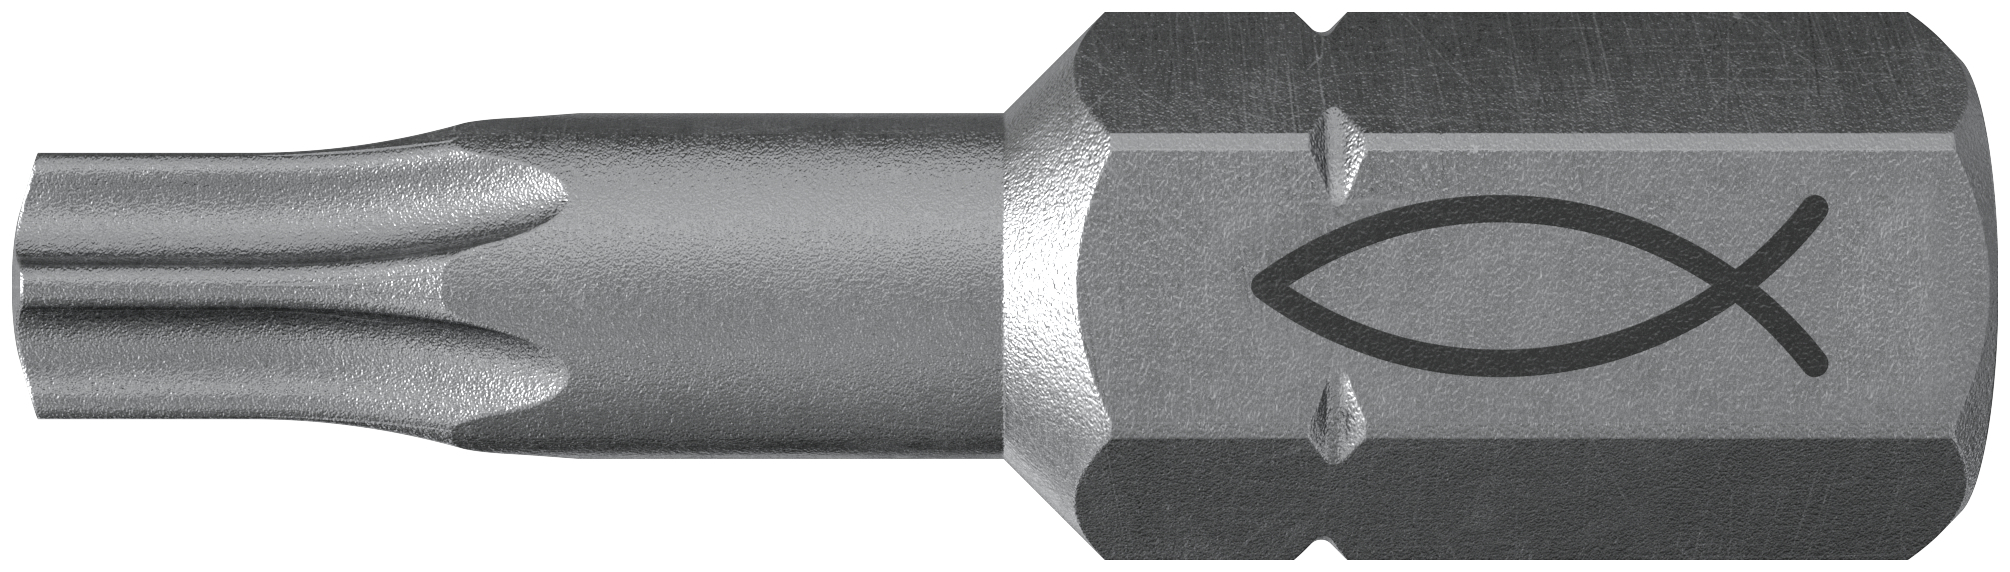 fischer Inserto per avvitatore FPB T 25 PROFI Bit W 10 (10 Pz.) L'inserto per trapano e avvitatore, in acciaio di alta qualit con elevata resistenza all?abrasione per uso professionale.